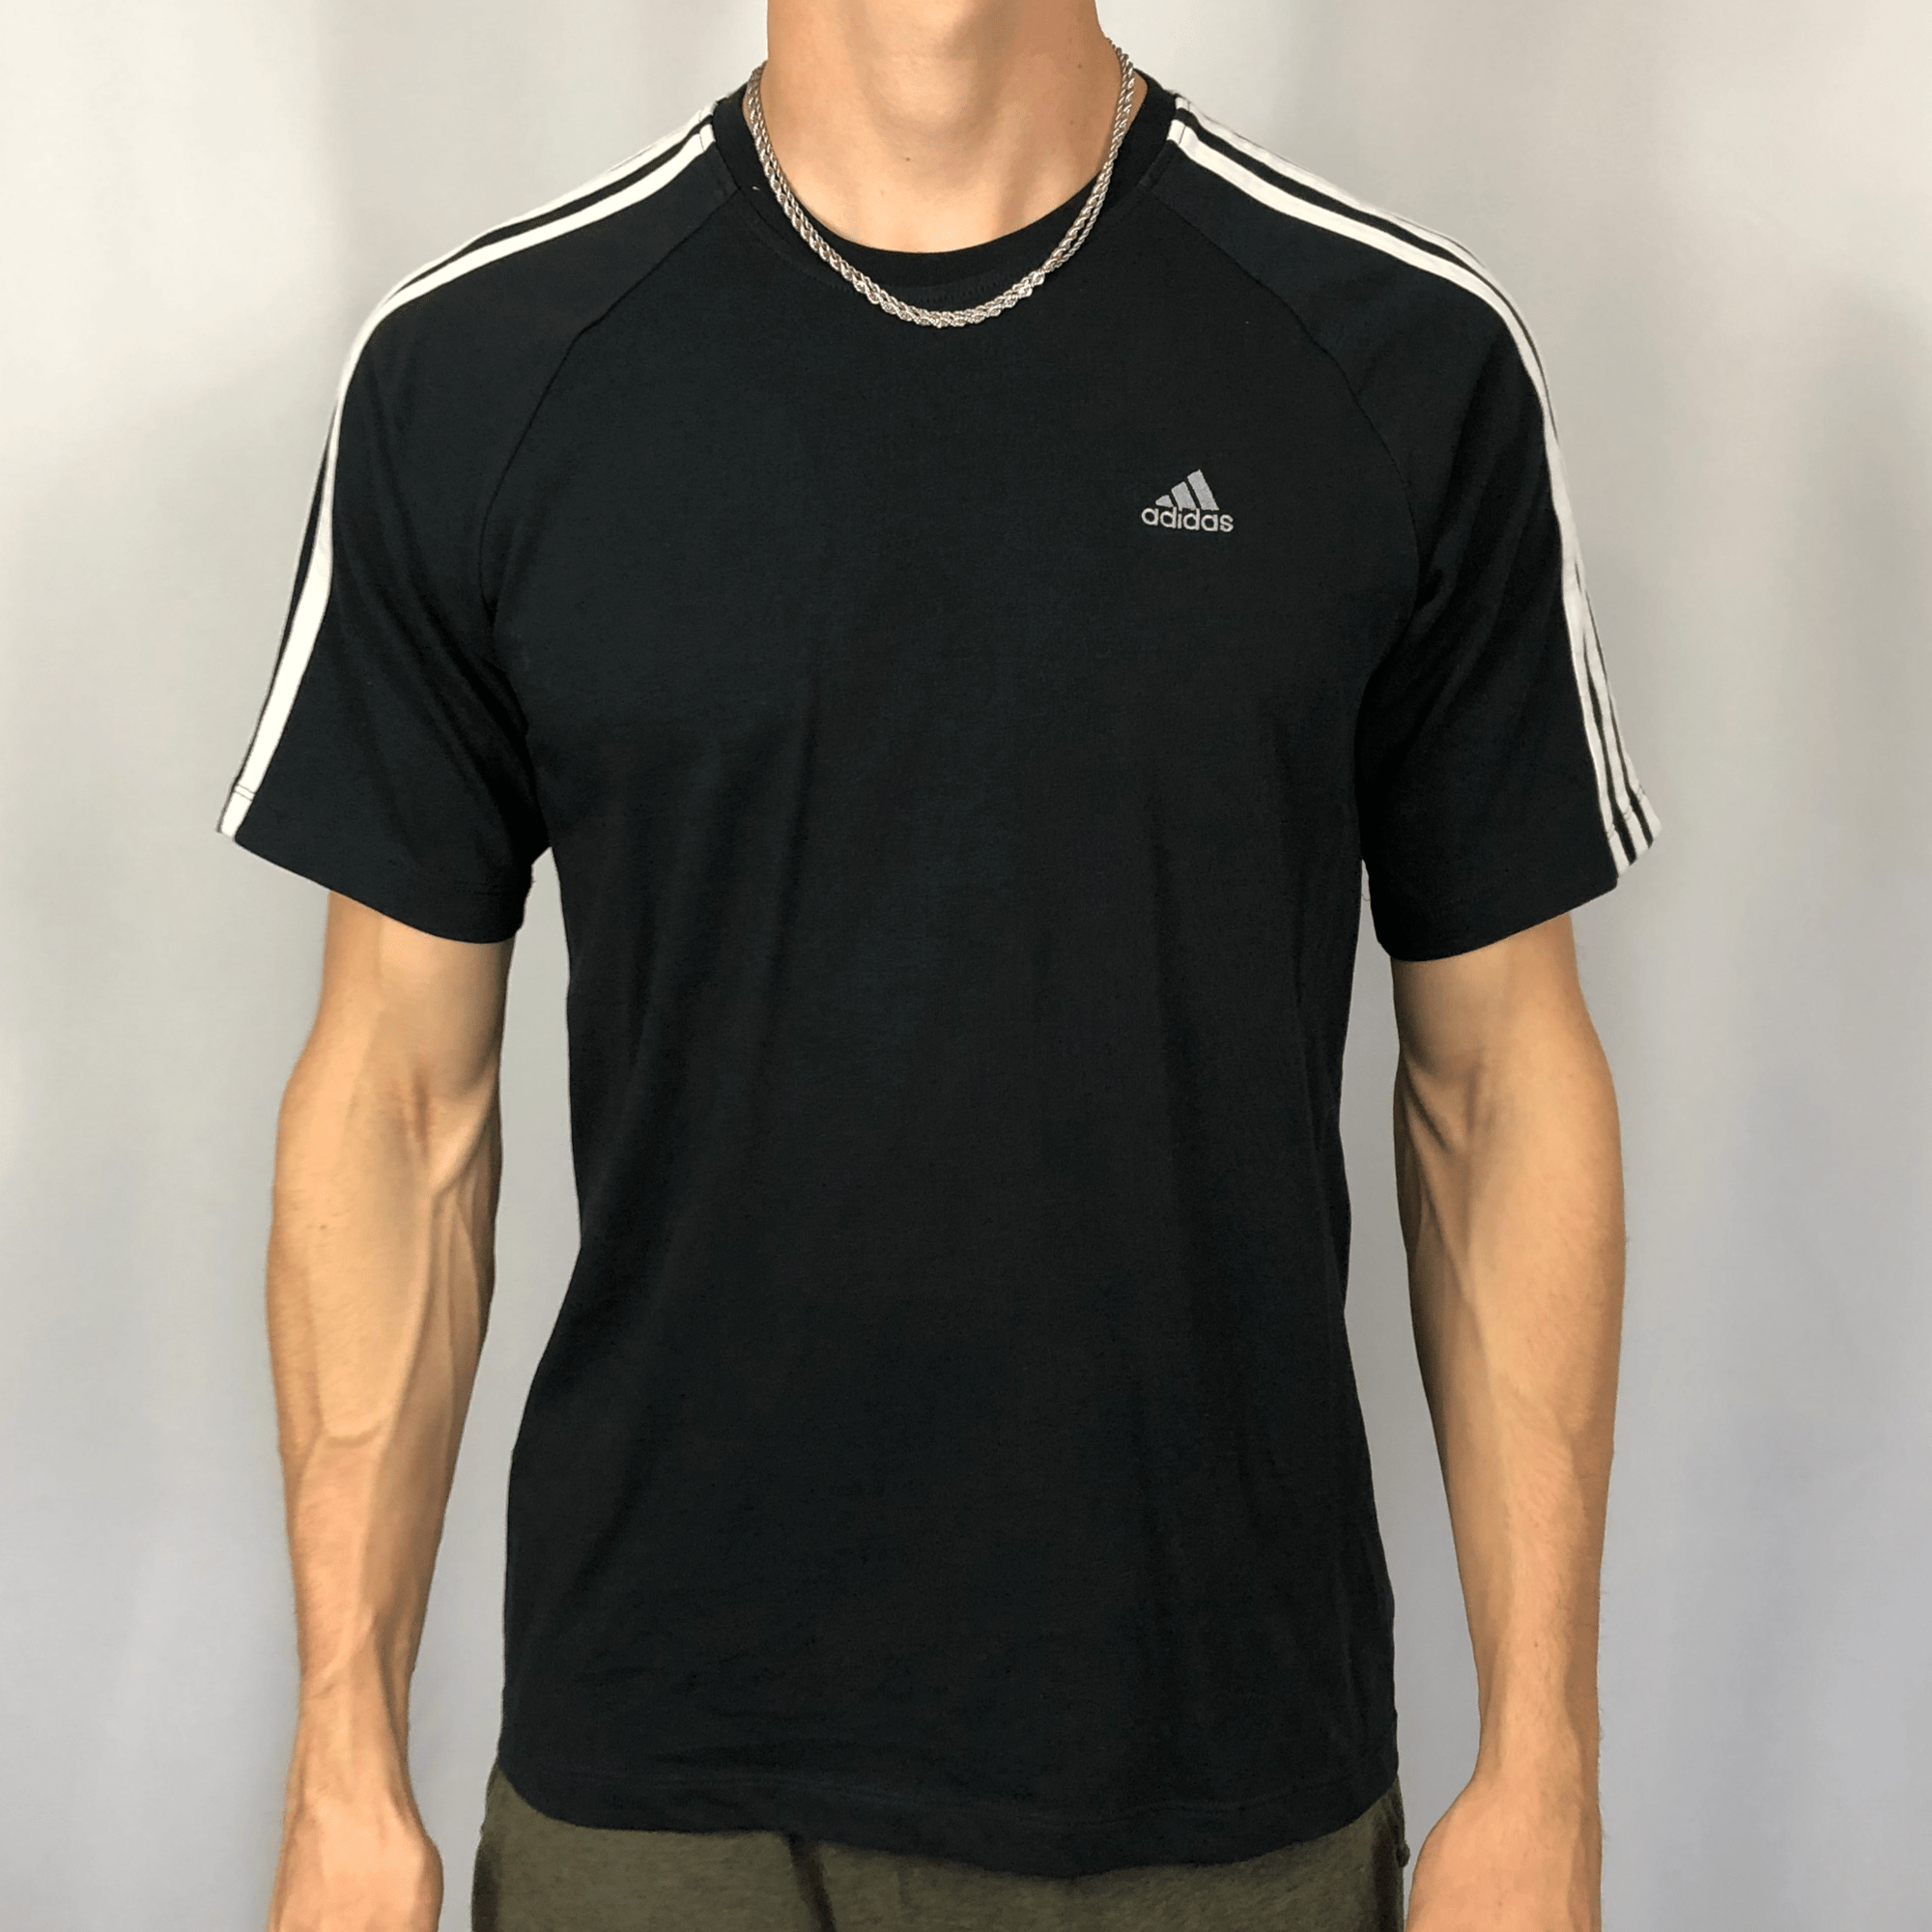 Adidas ClimaLite T-Shirt - Large - Vintique Clothing